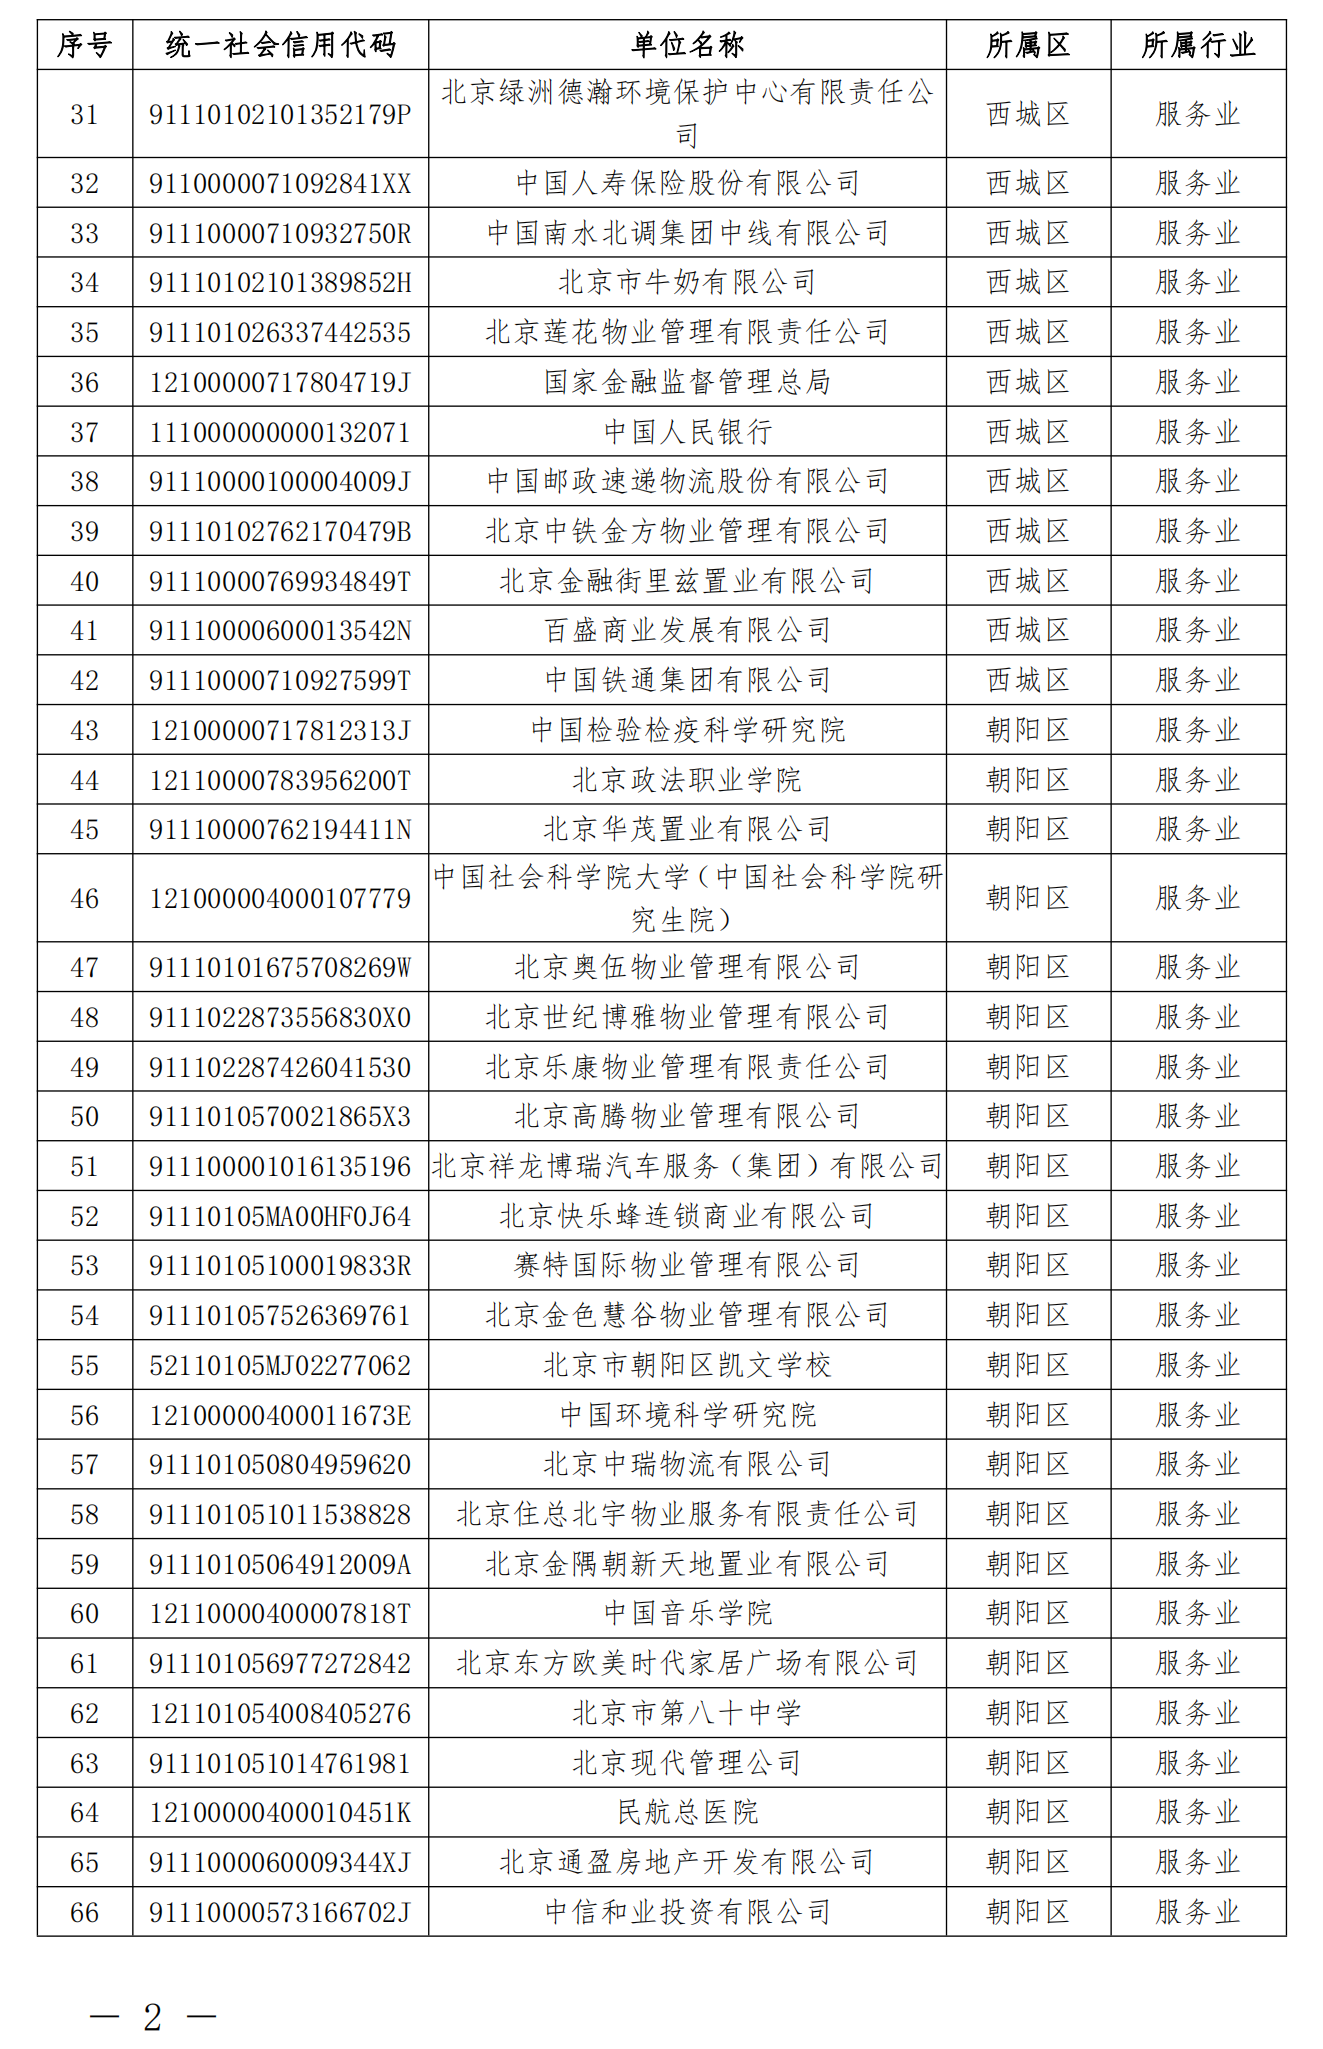 2.纳入北京市碳排放权交易管理的2023年度一般报告单位名单_01